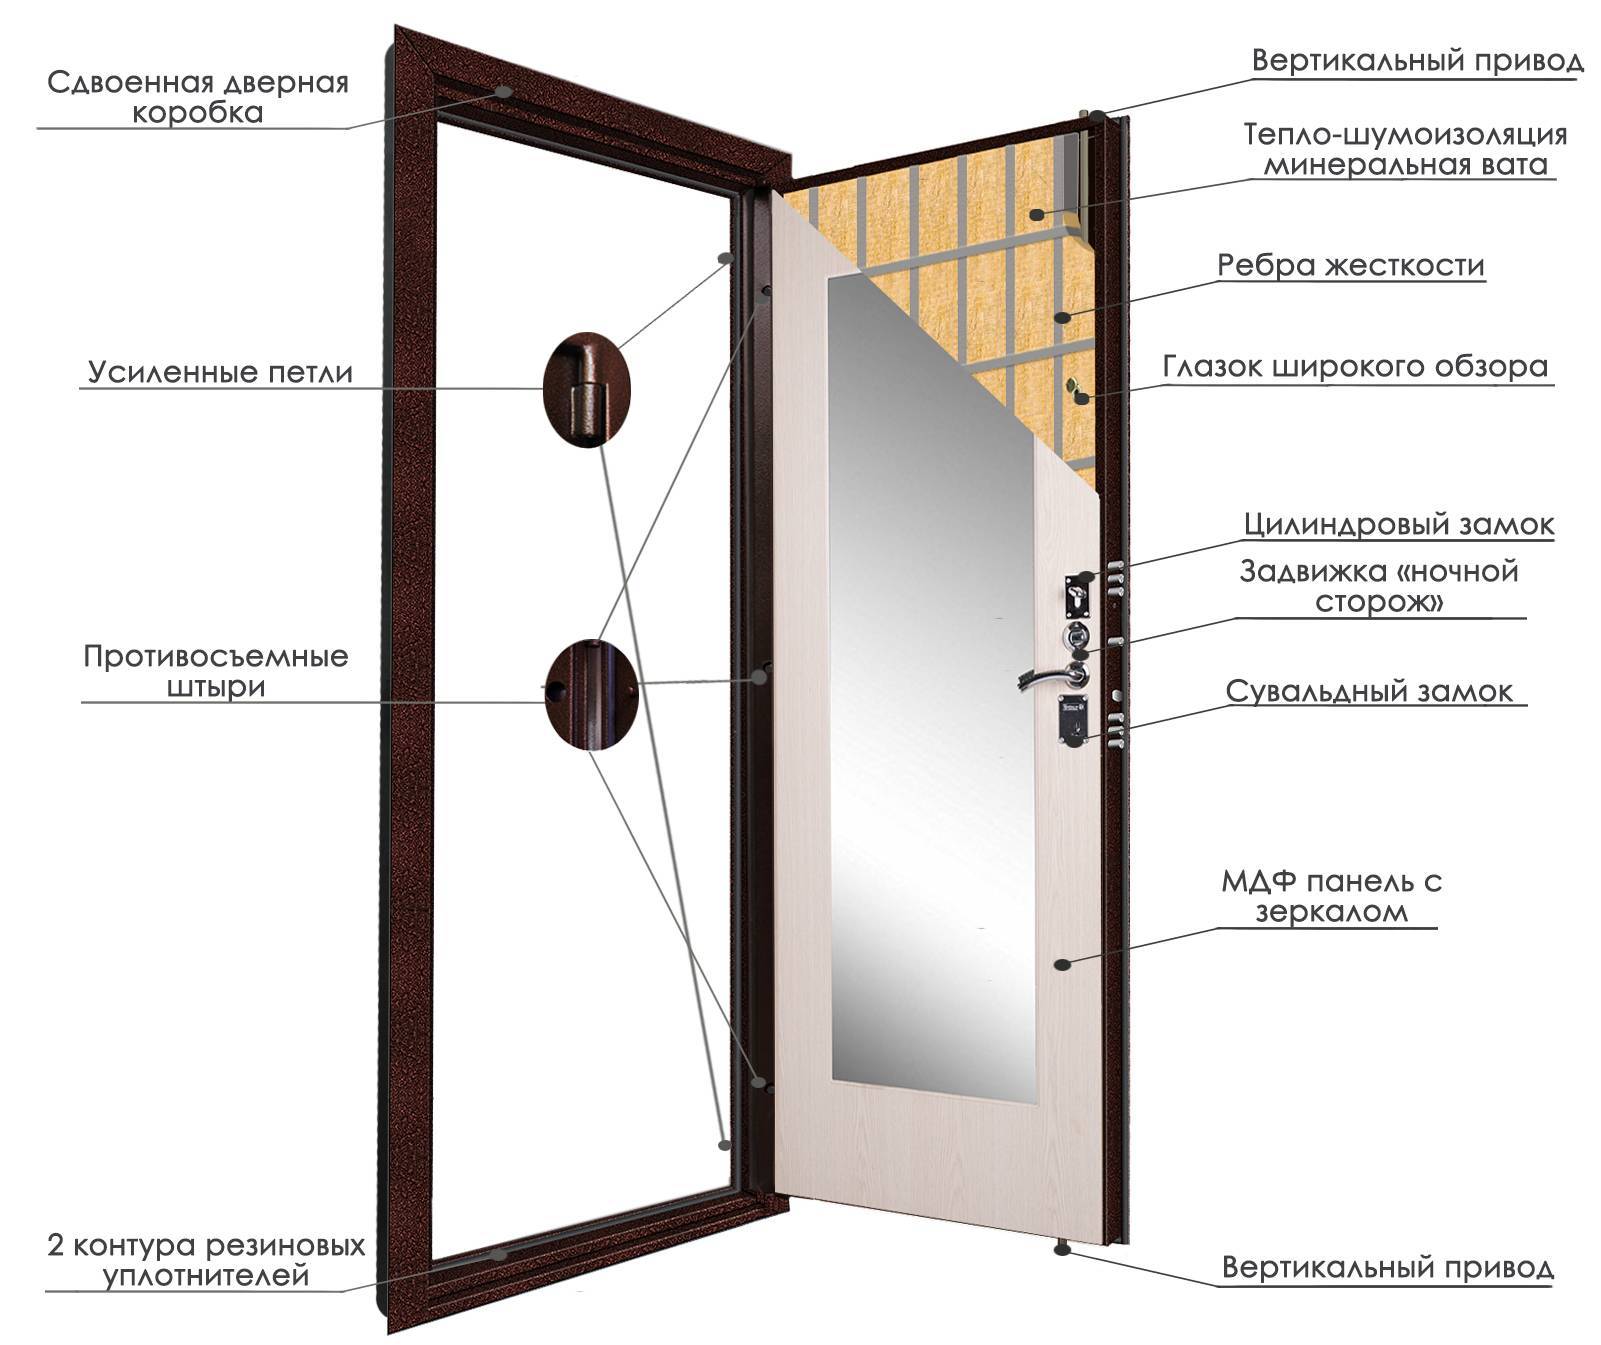 Коды железных дверей. Входная дверь толщиной 120 мм сбоку. Размер проема для сейф дверь входная металлическая. Стандарт ширины входной металлической двери. Железная дверь входная Размеры с коробкой стандартные.